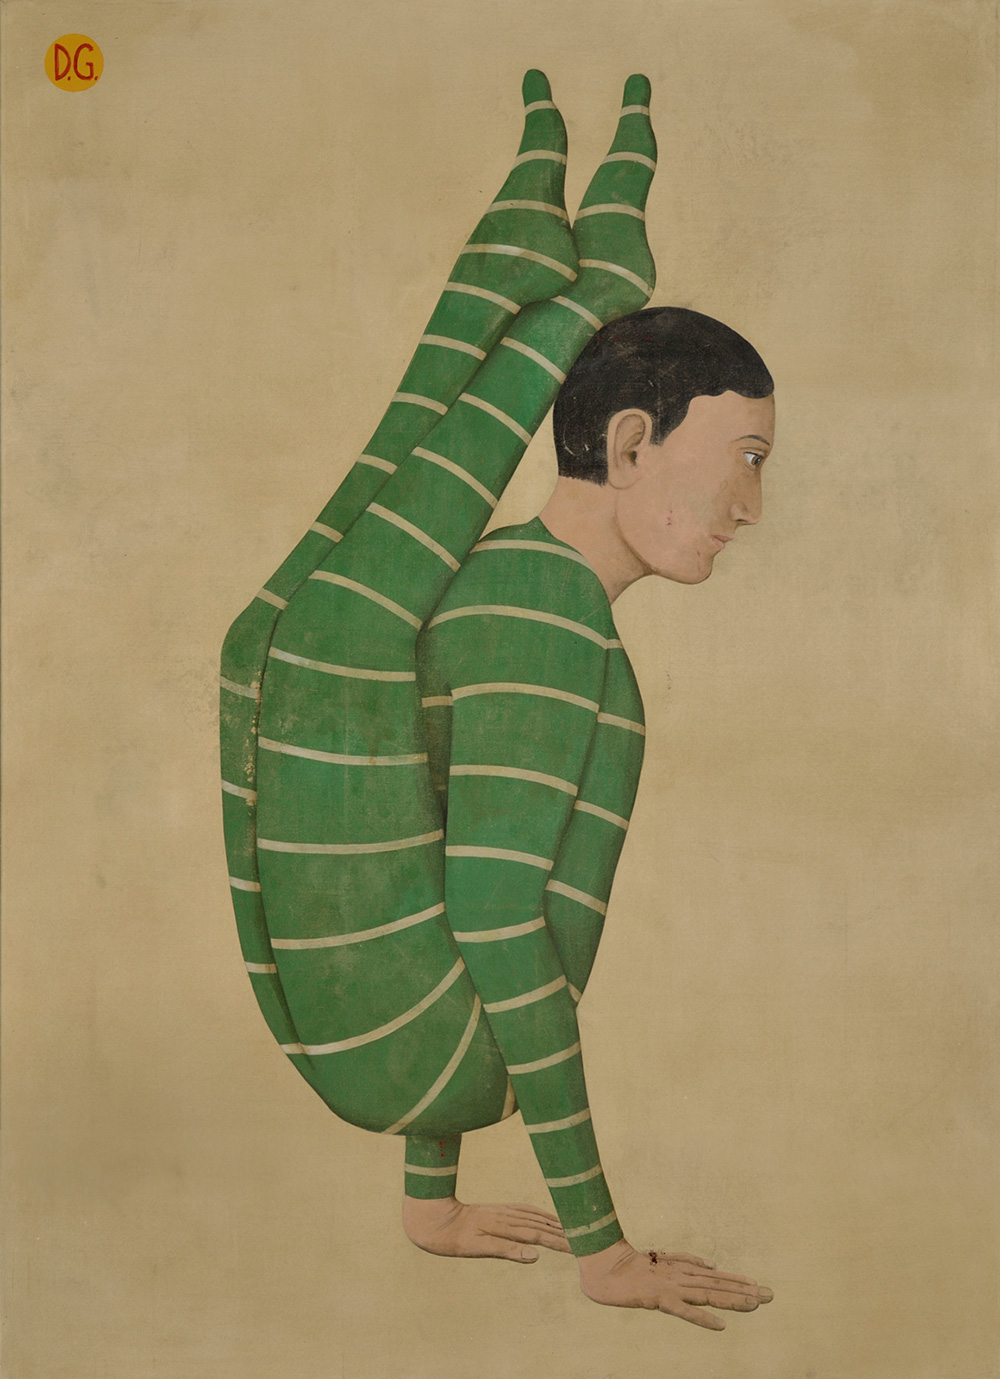  Acróbata verde Acrílico sobre lienzo / 210 x 152 cm / 2016